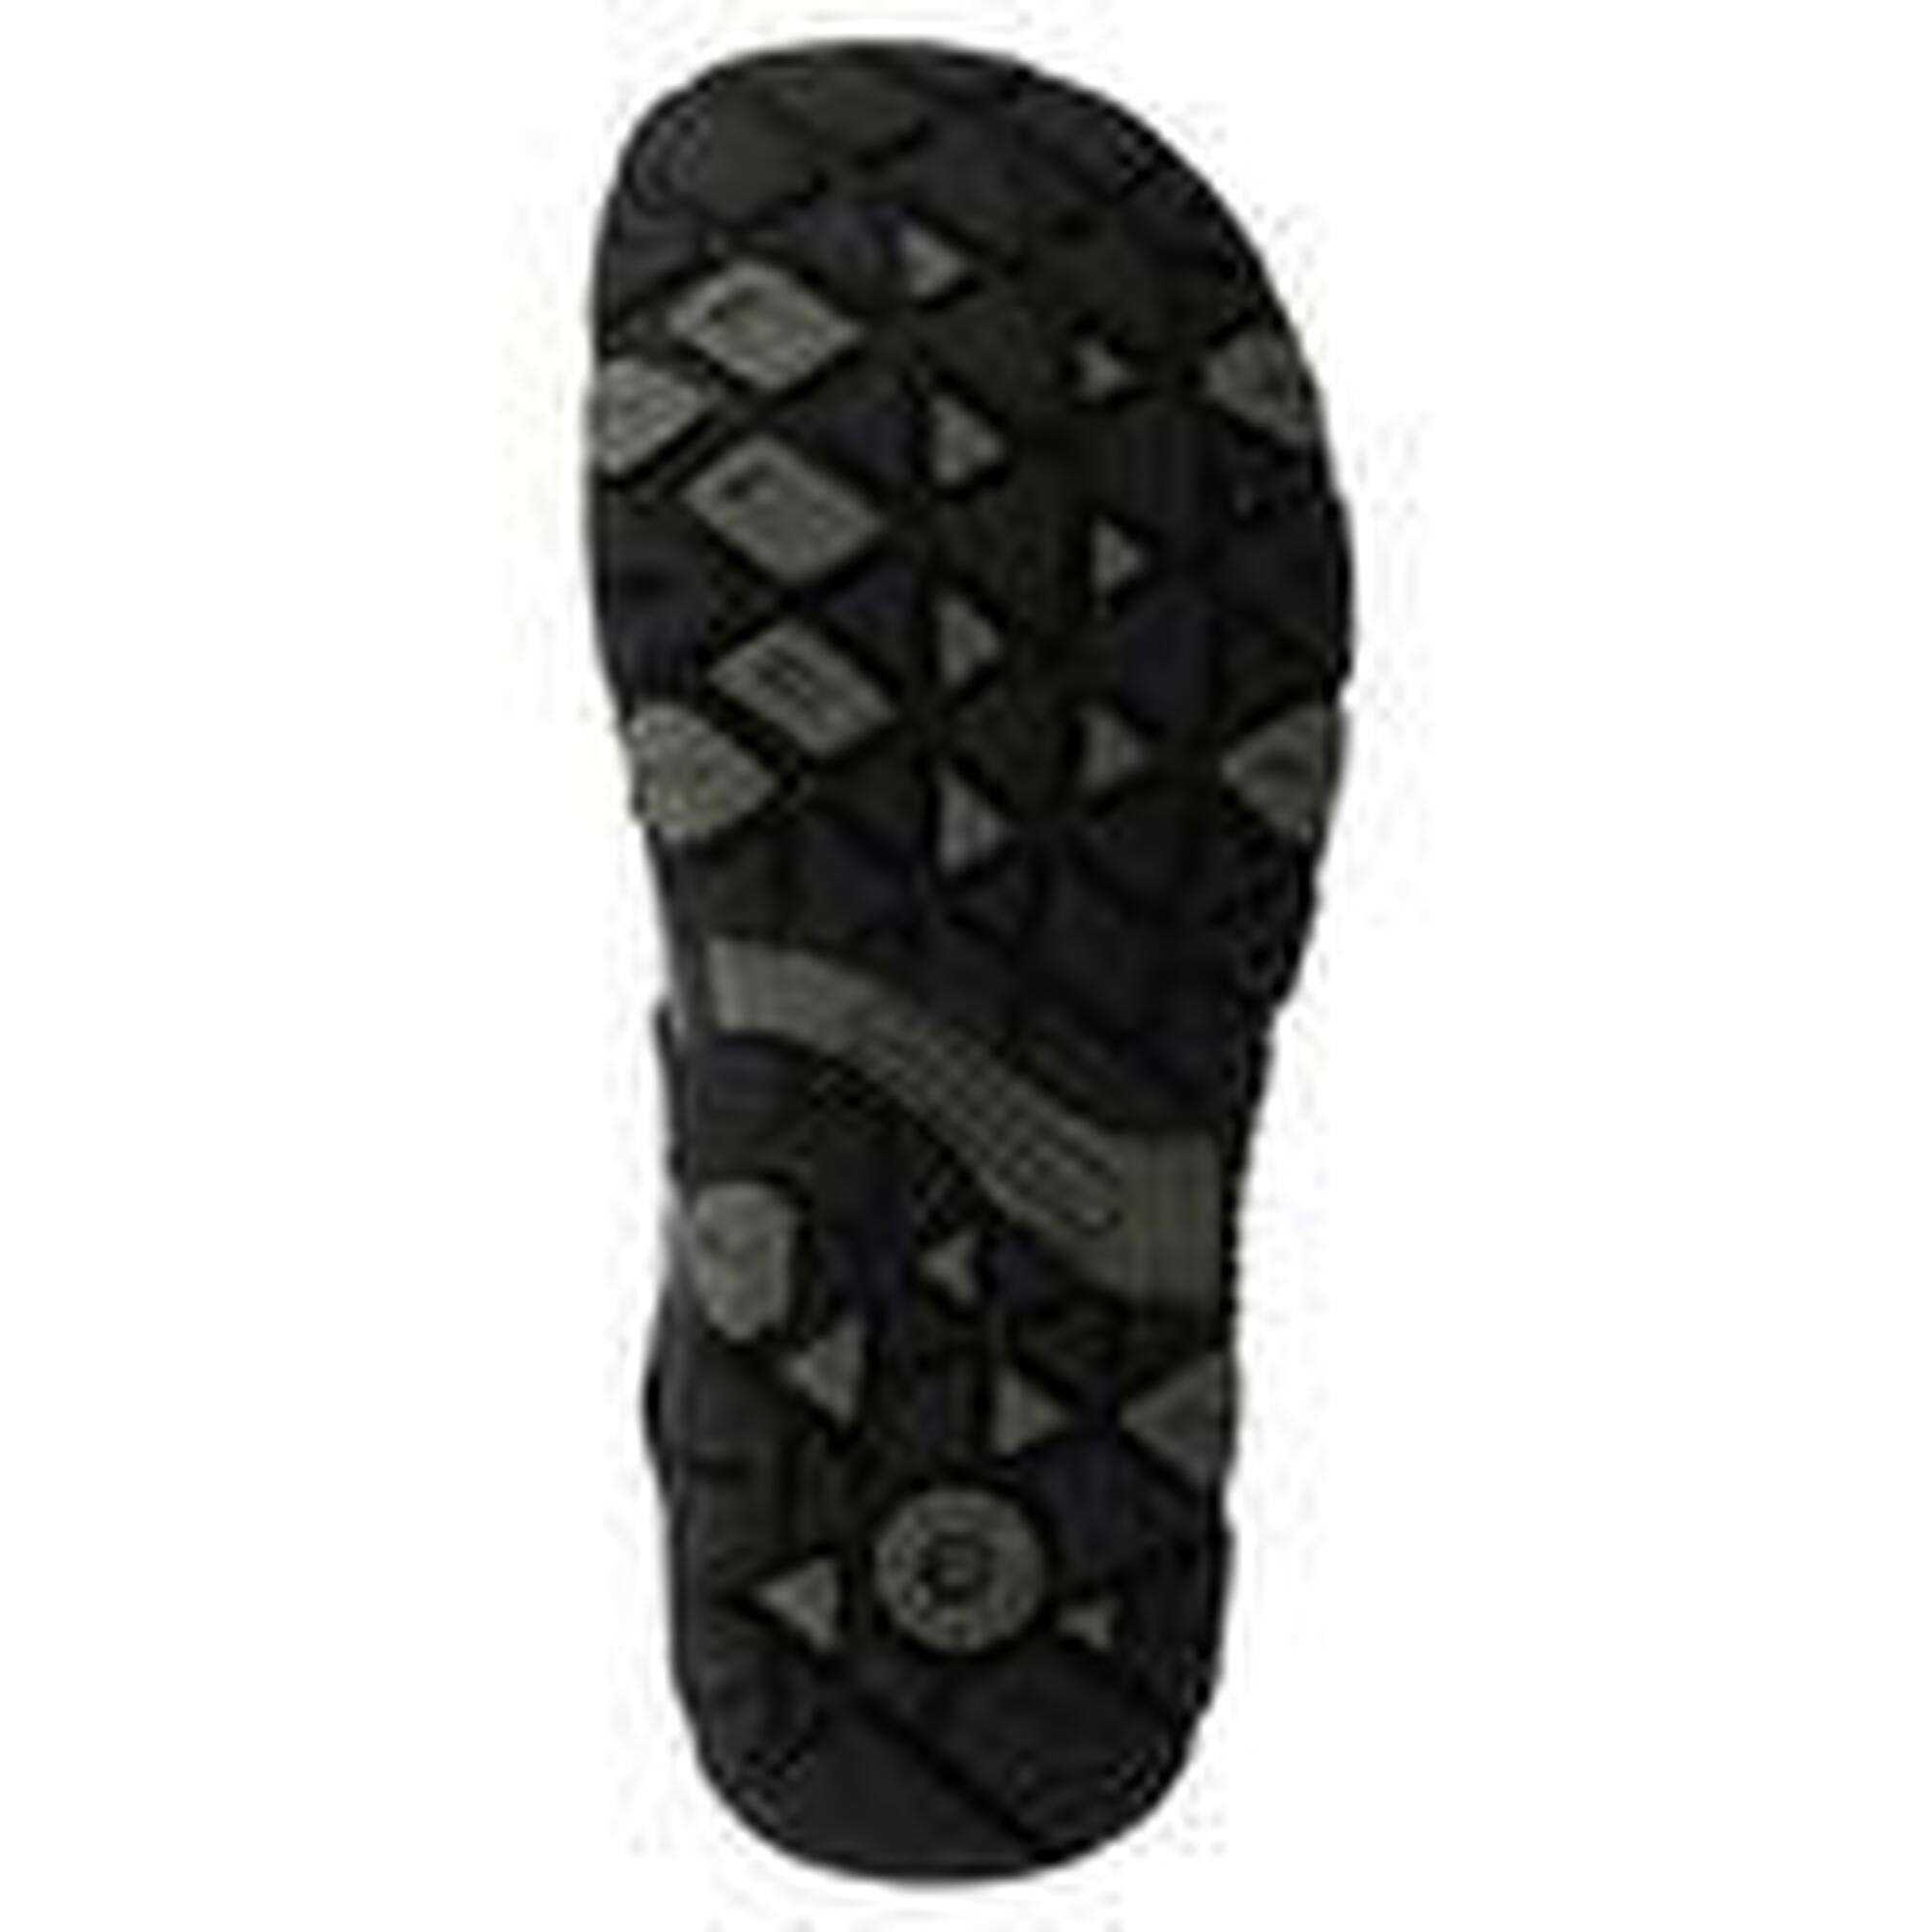 Merrell Women Trekking sandals Sandals Sandspur Rose Convert J002684 black